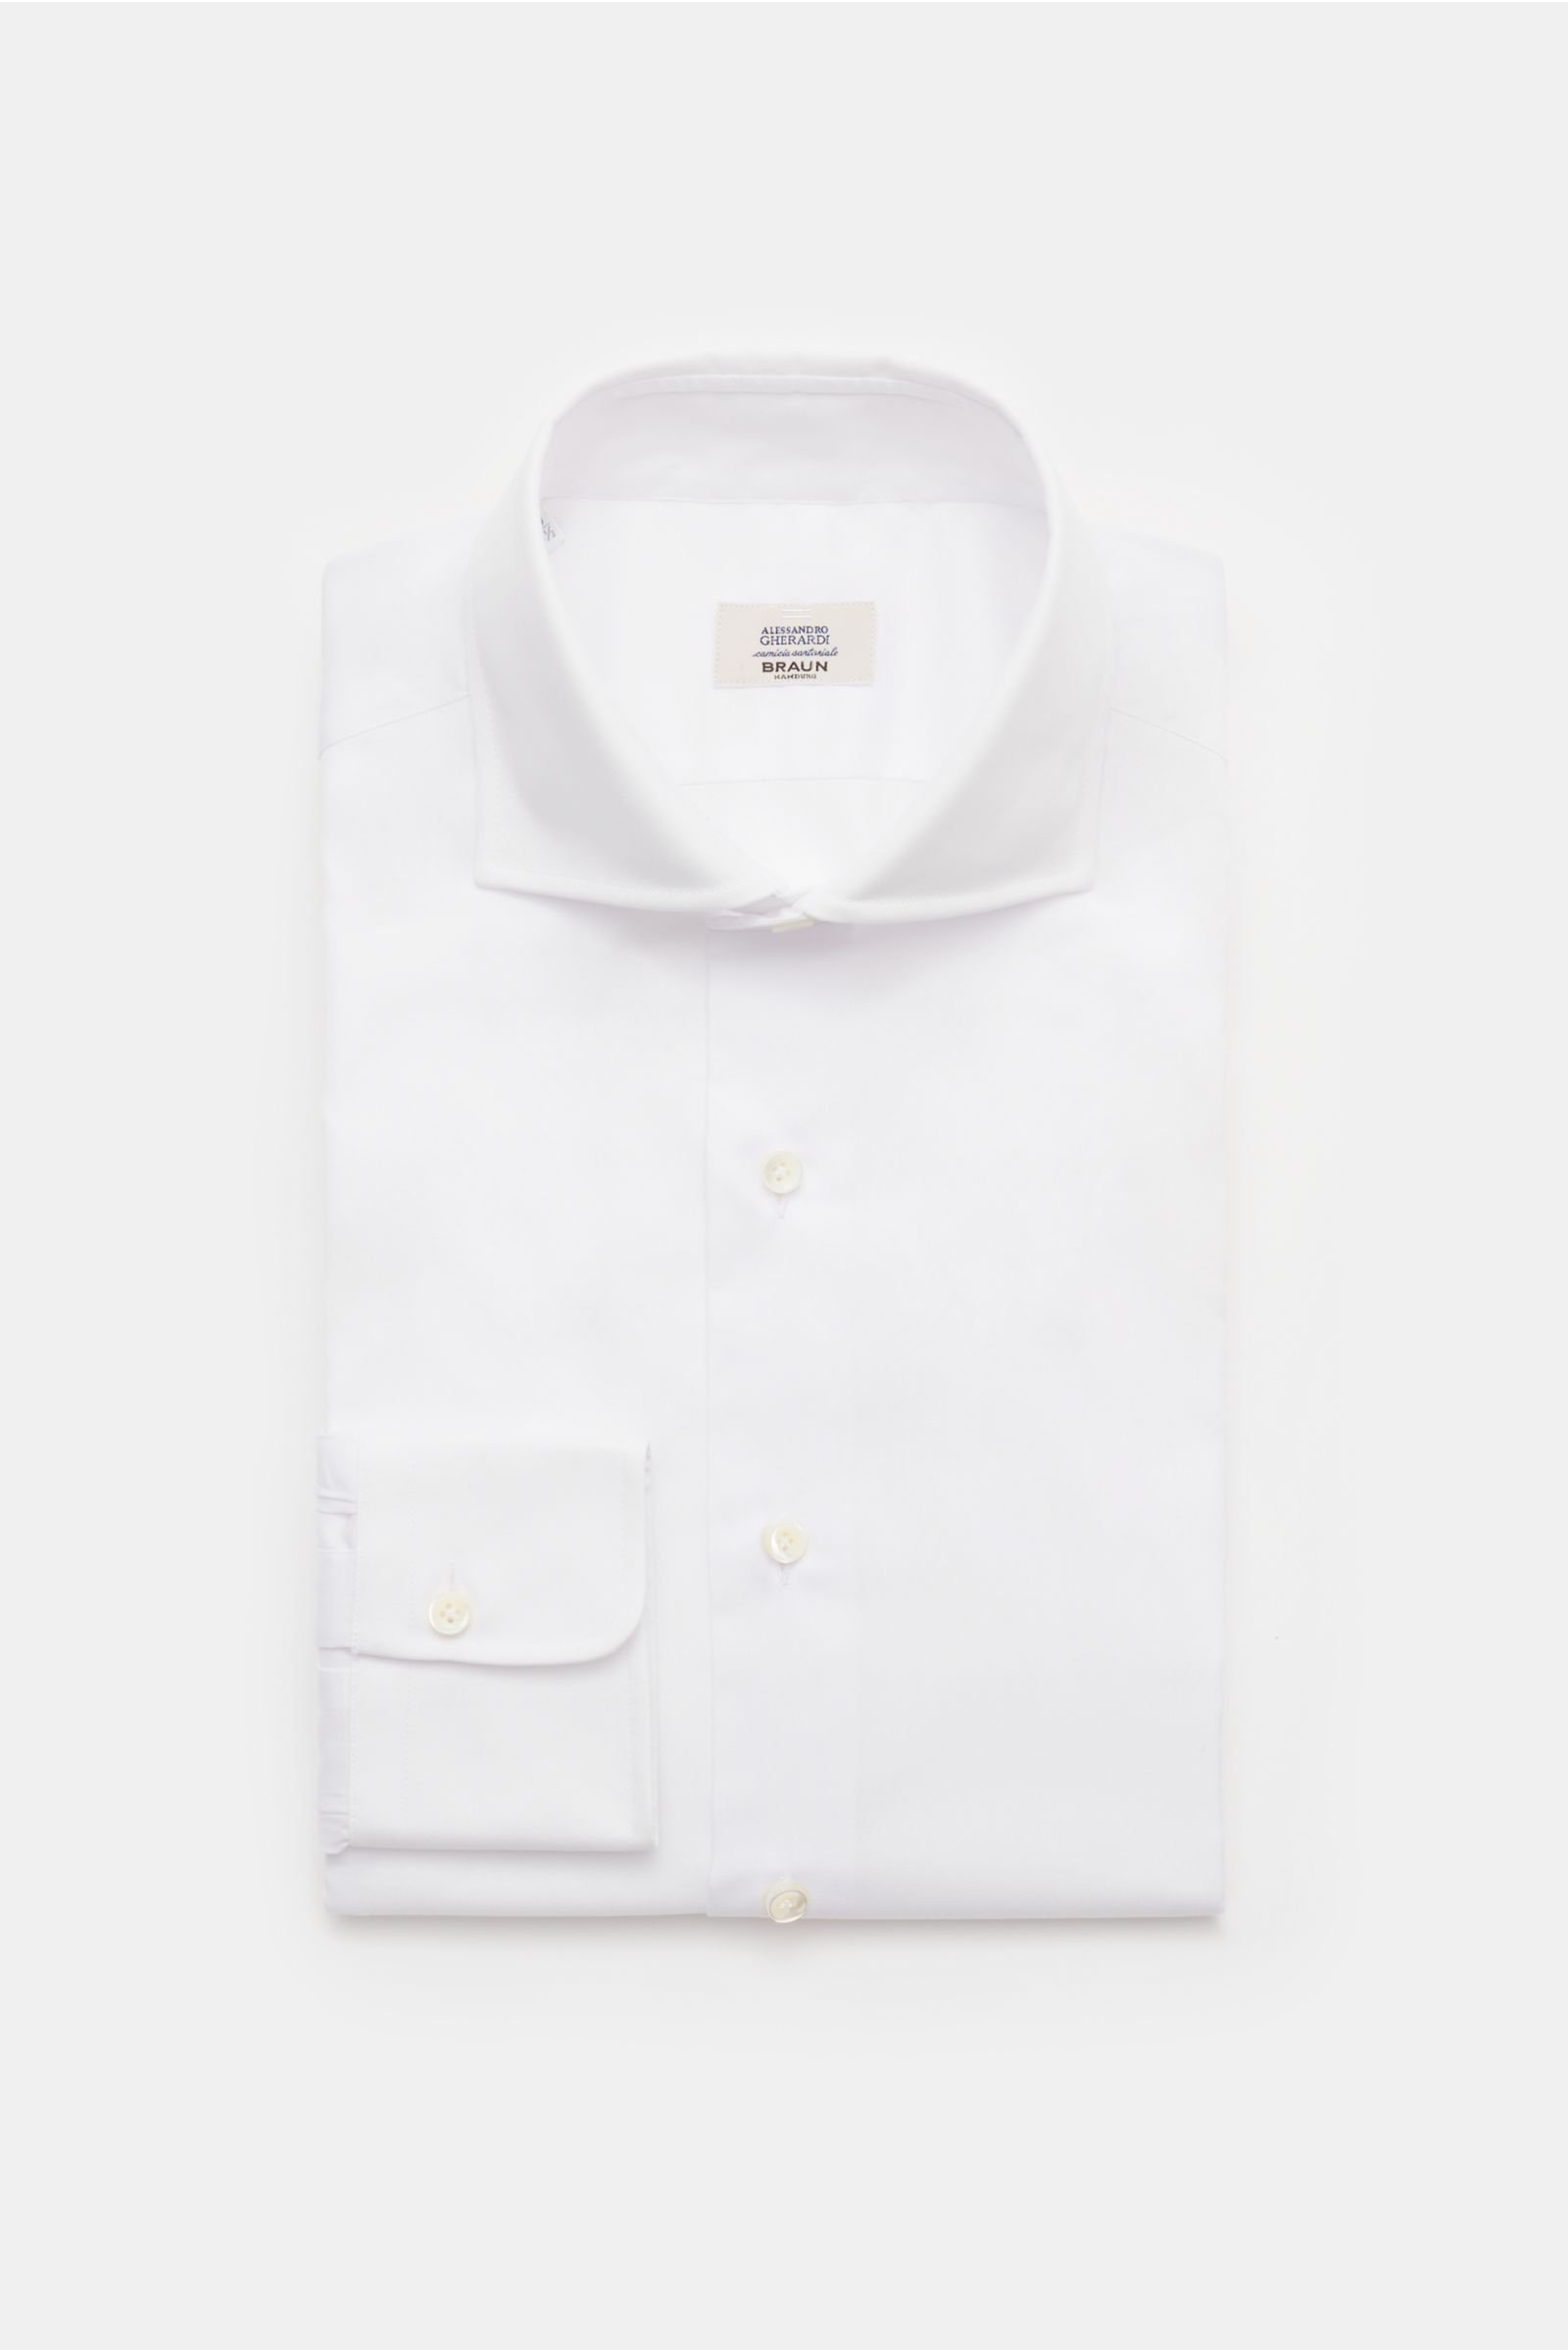 Oxford shirt shark collar white